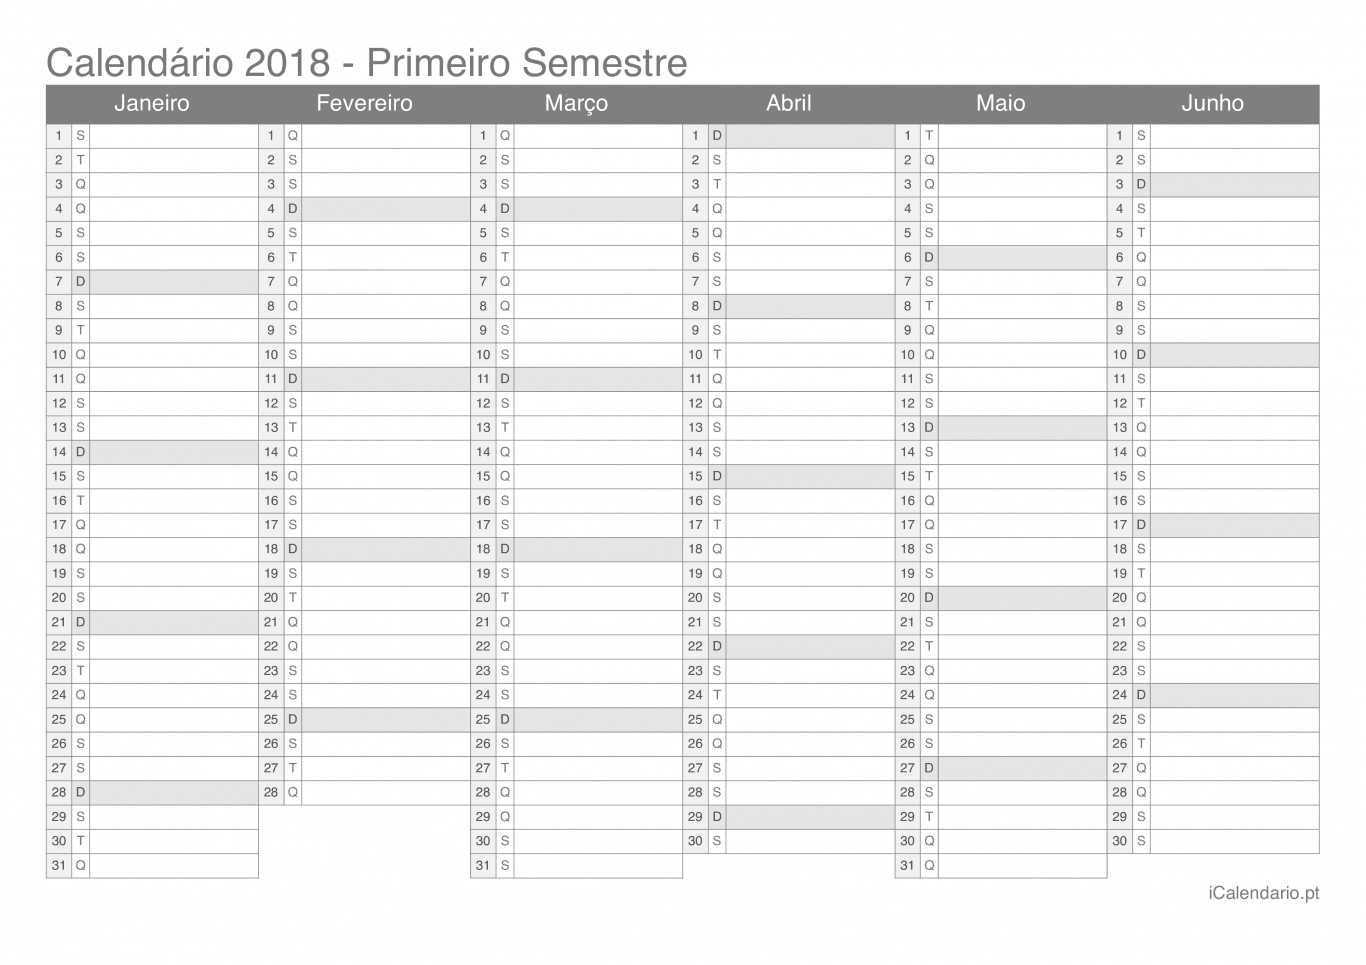 Calendário por semestre 2018